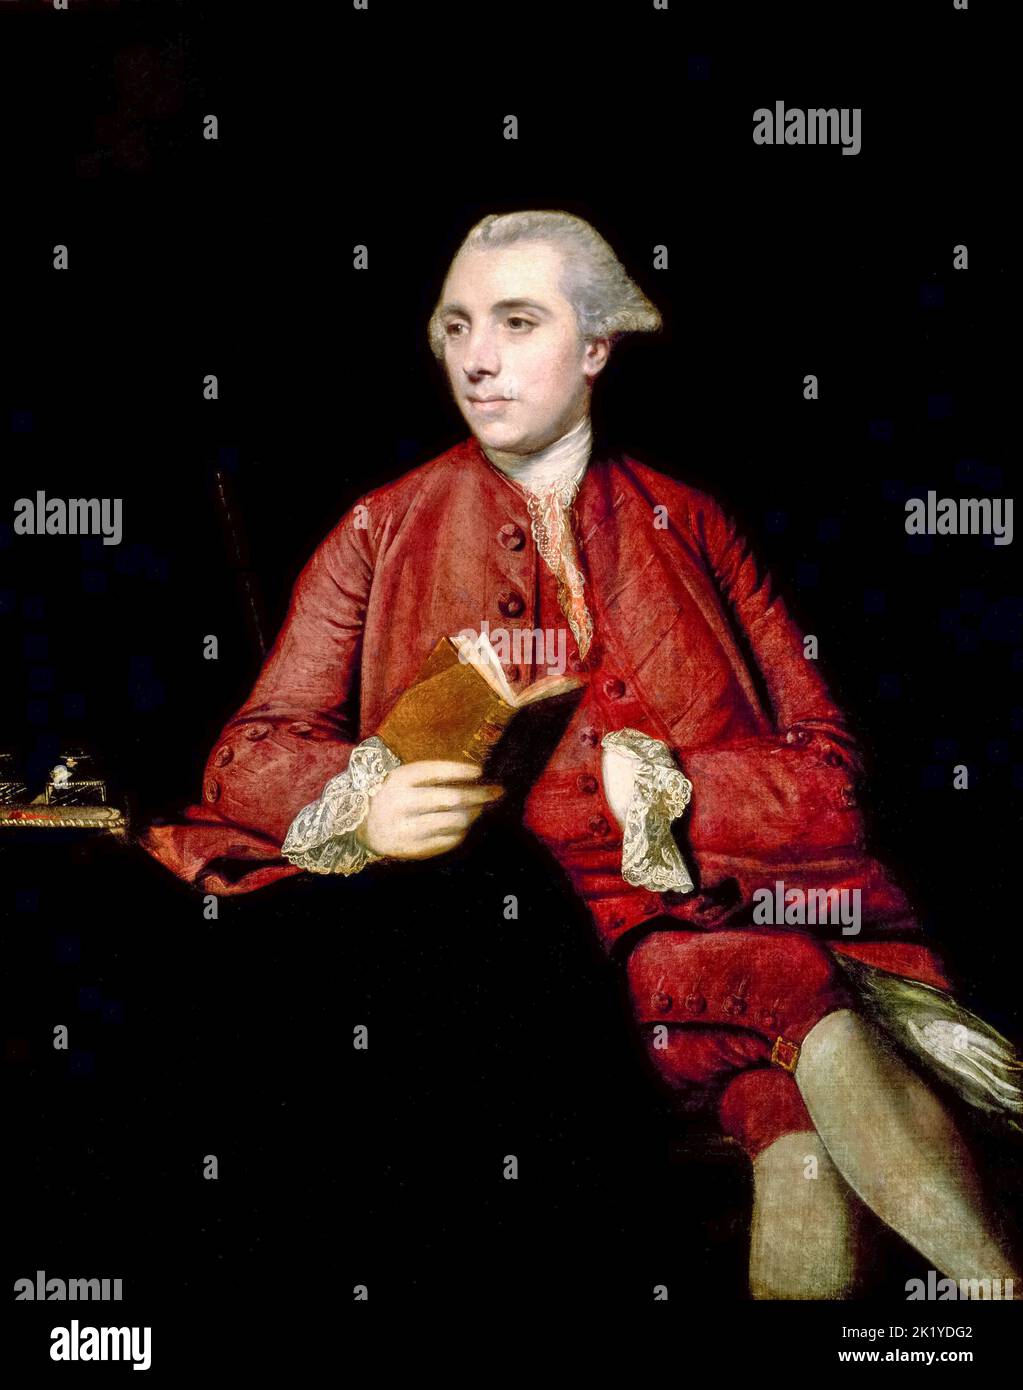 Anthony Chamier (1725-1780), fonctionnaire anglais, financier et homme politique, portrait peint à l'huile sur toile par Sir Joshua Reynolds, 1767 Banque D'Images